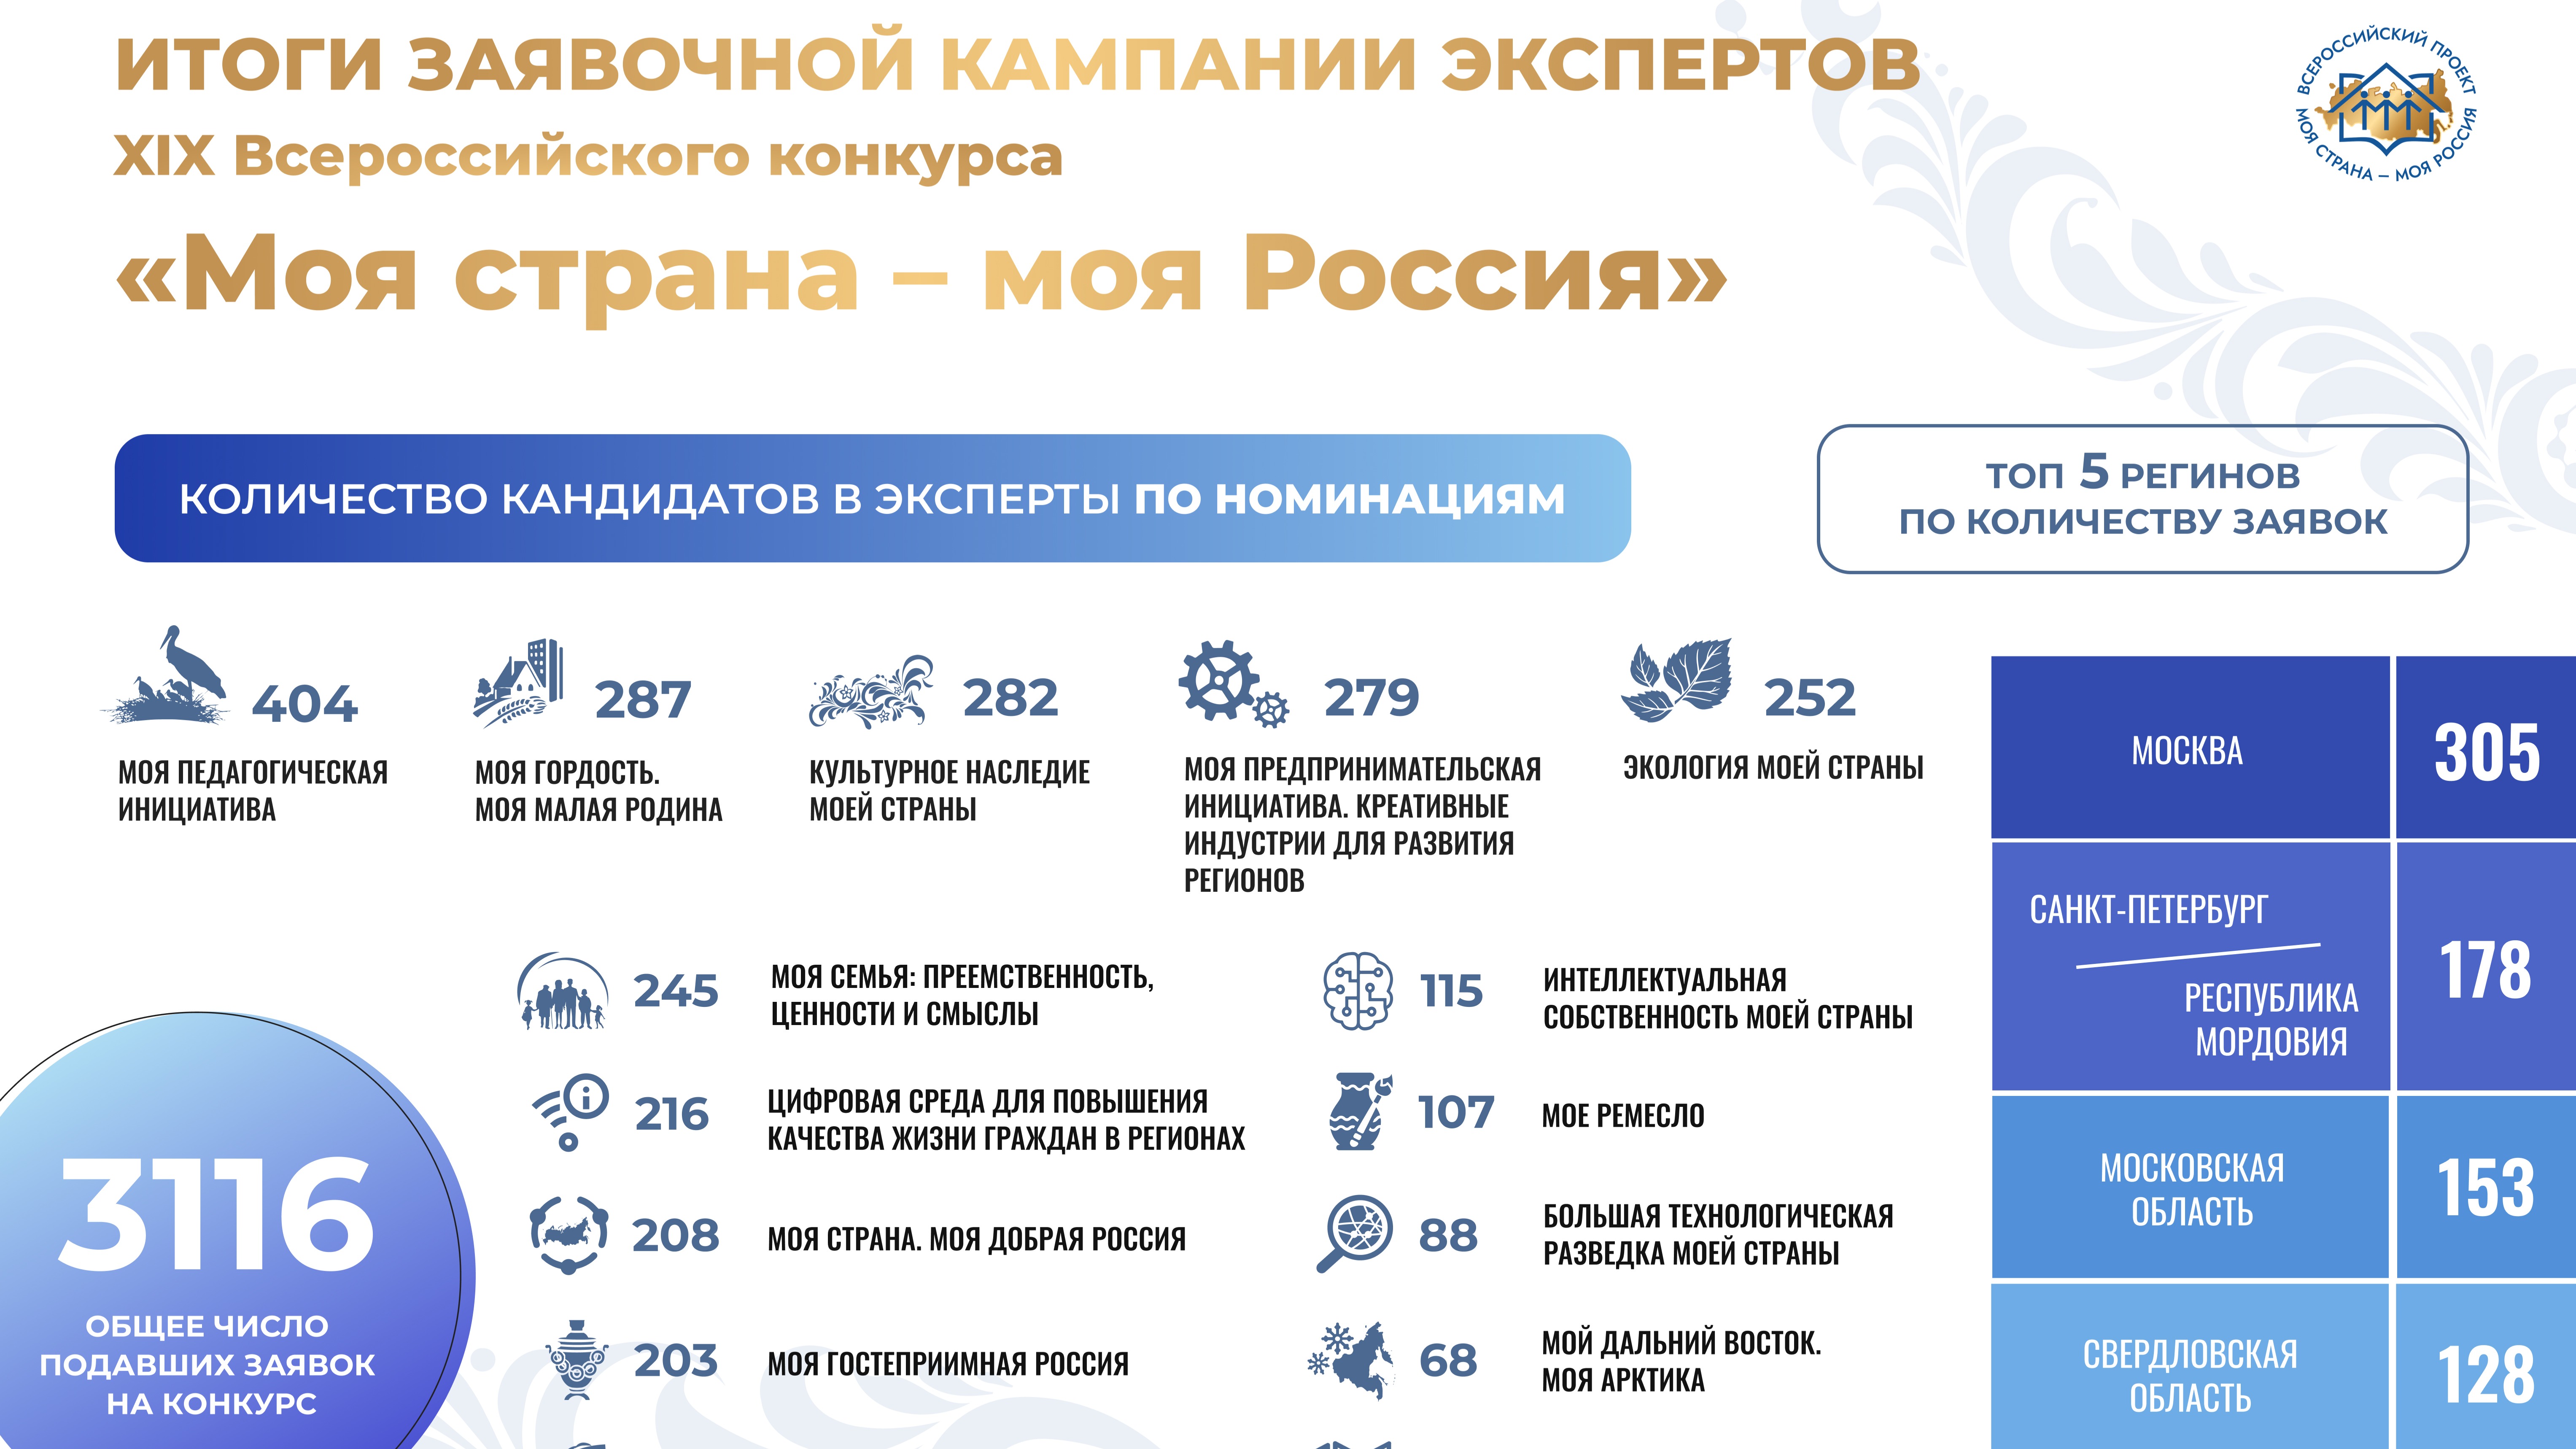 Более 3 тысяч специалистов готовы стать экспертами Всероссийского конкурса «Моя страна – моя Россия»